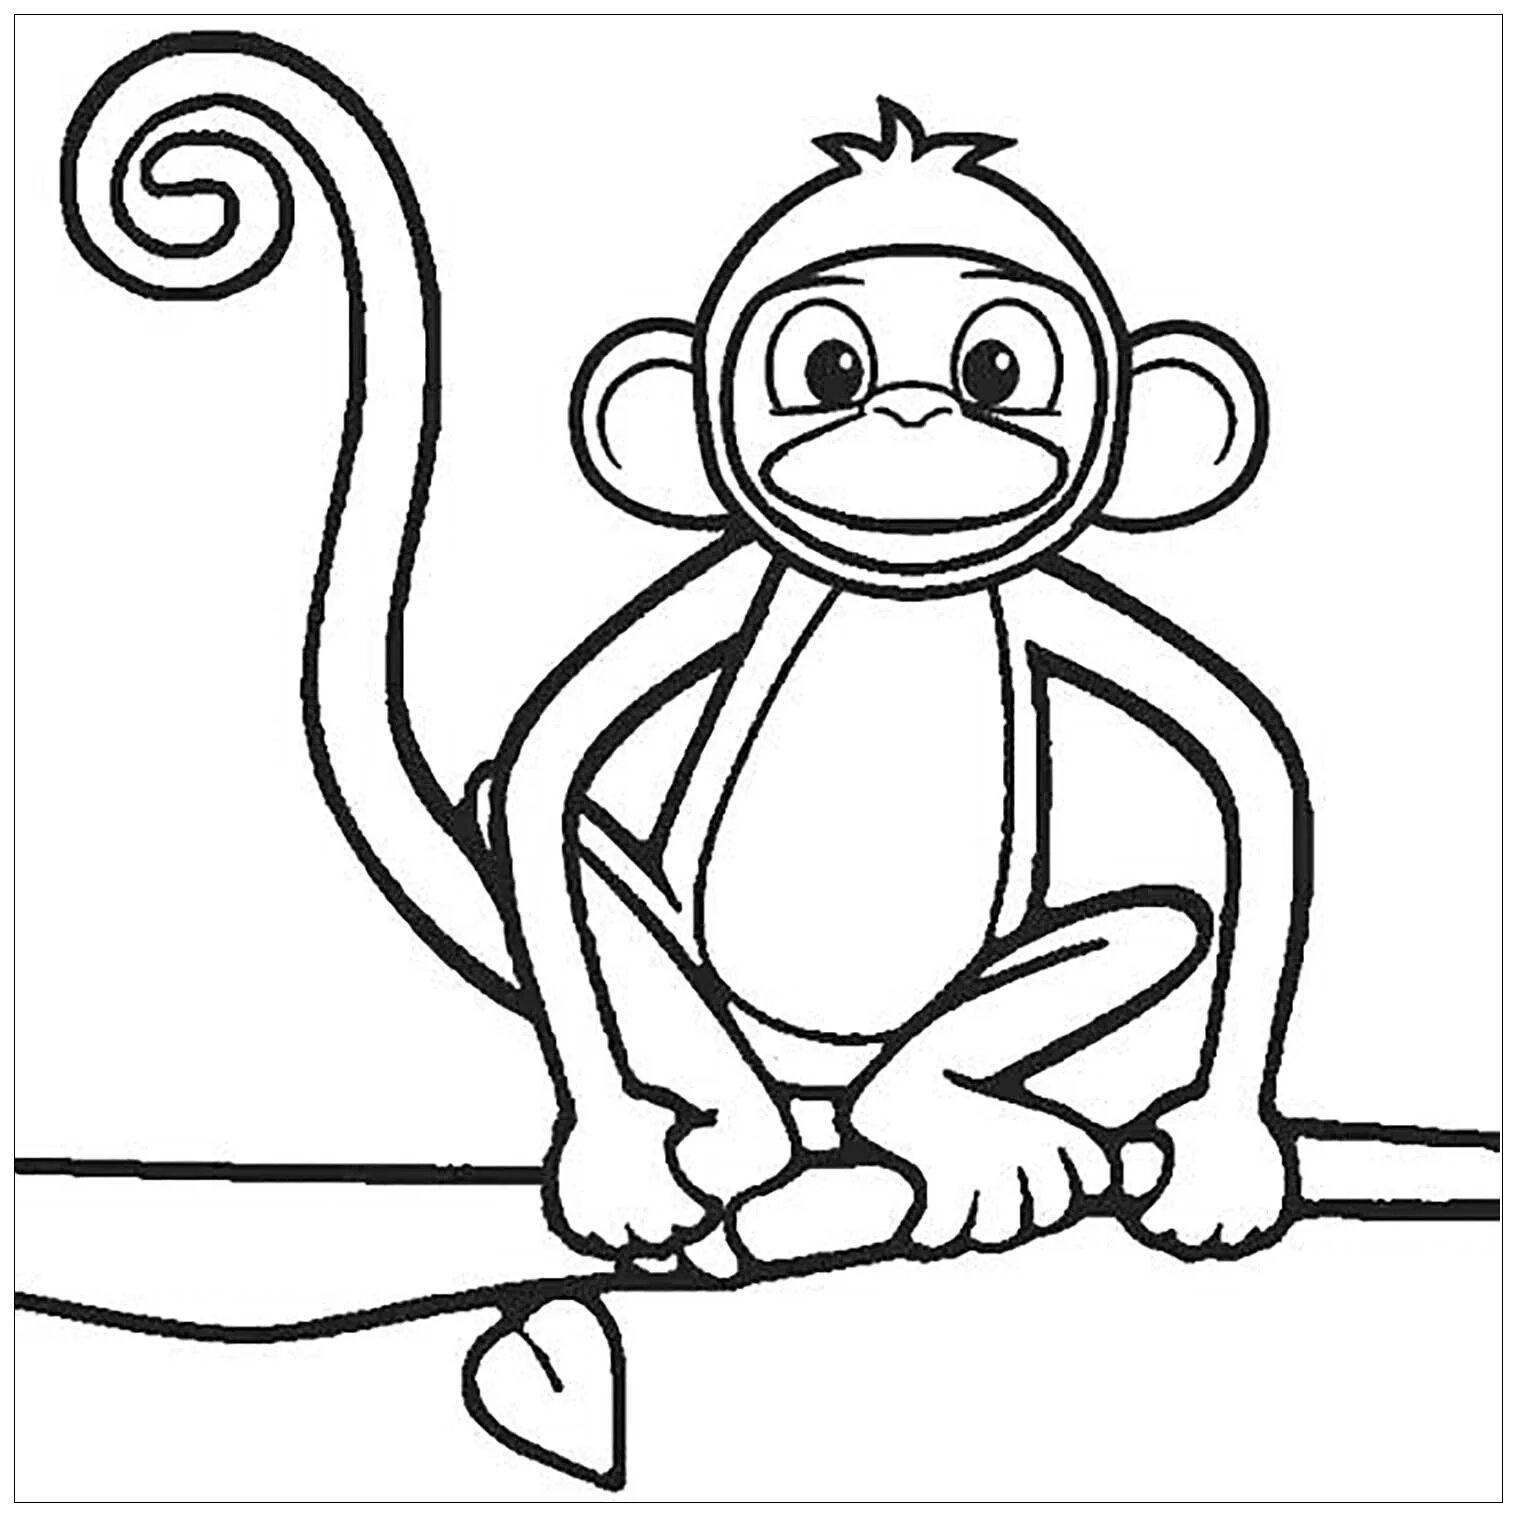 Как сделать обезьяну фигурку своими руками: 5 интересных идей